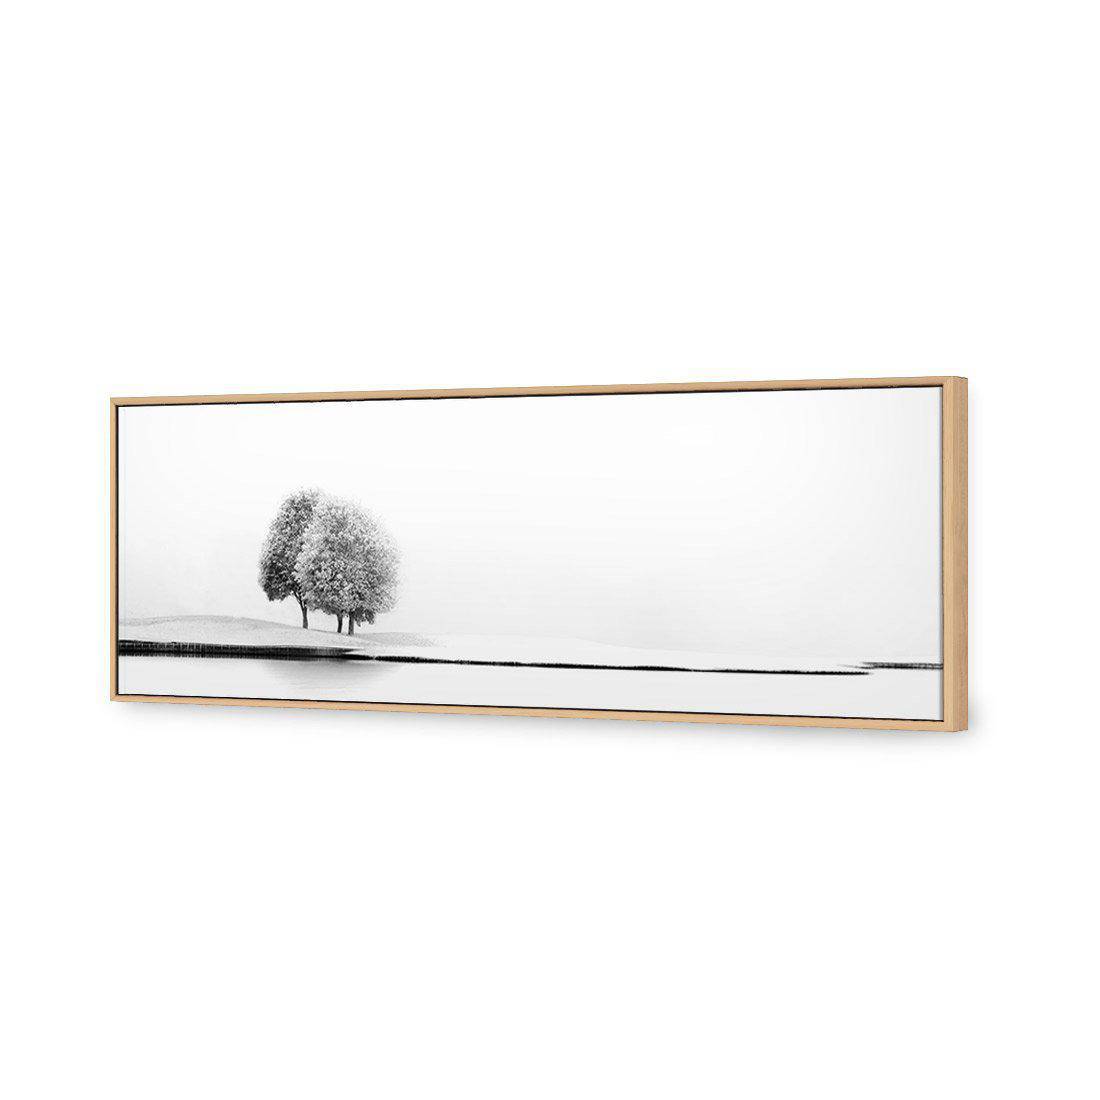 United Again by Marc Huybrighs Canvas Art-Canvas-Wall Art Designs-60x20cm-Canvas - Oak Frame-Wall Art Designs